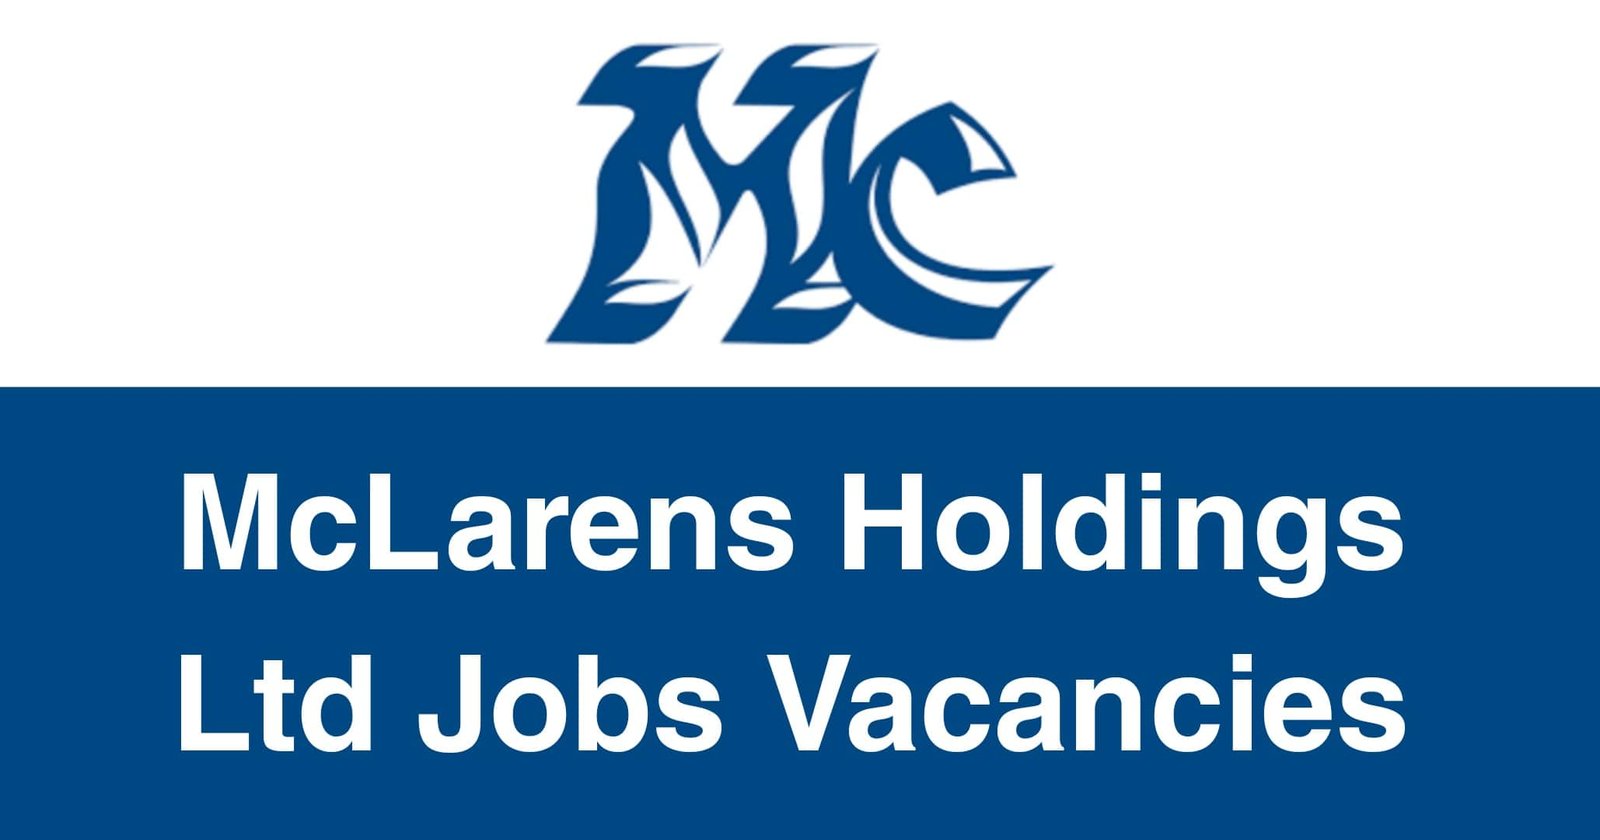 McLarens Holdings Ltd Jobs Vacancies